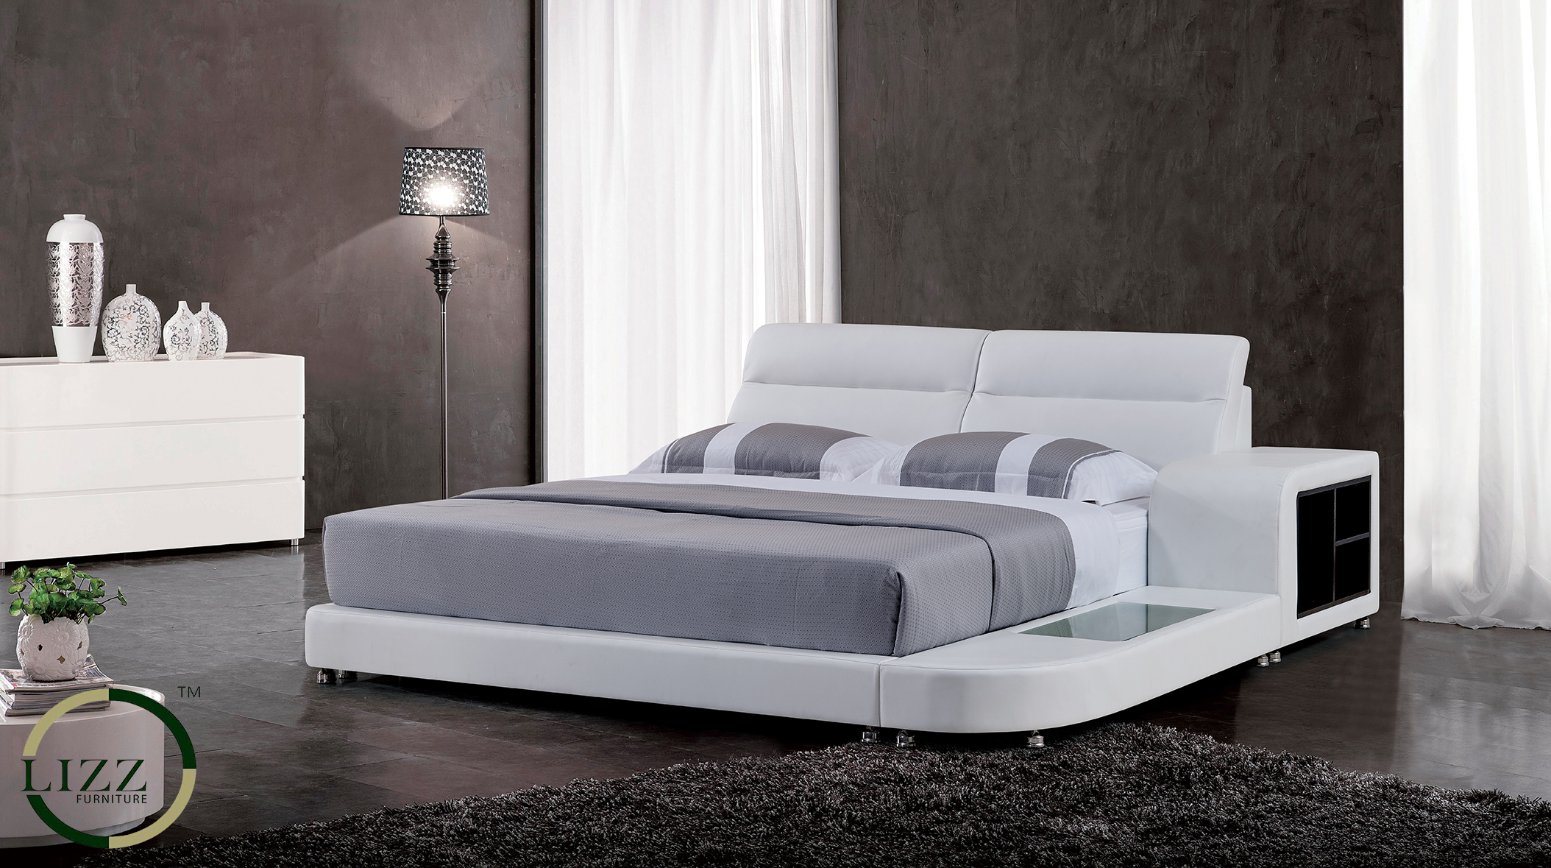 Hot Sale Elegant Designs Bed with Bedside Table